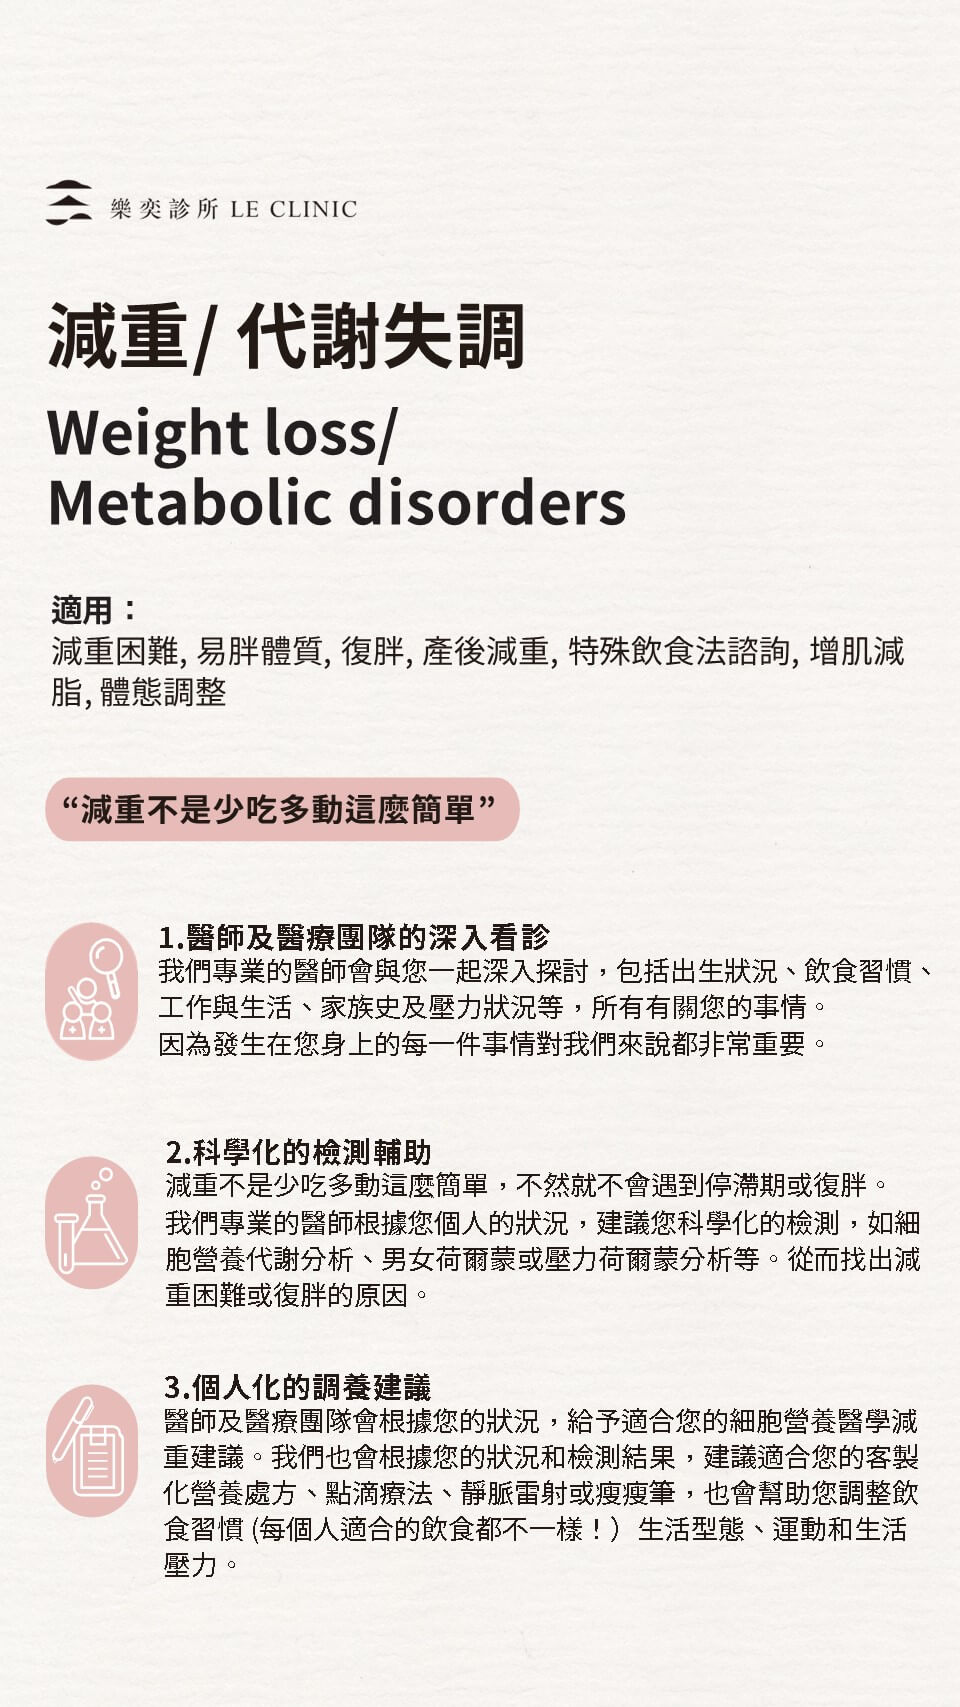 減重/代謝失調 Weight loss/Metabolic disorders - 簡介